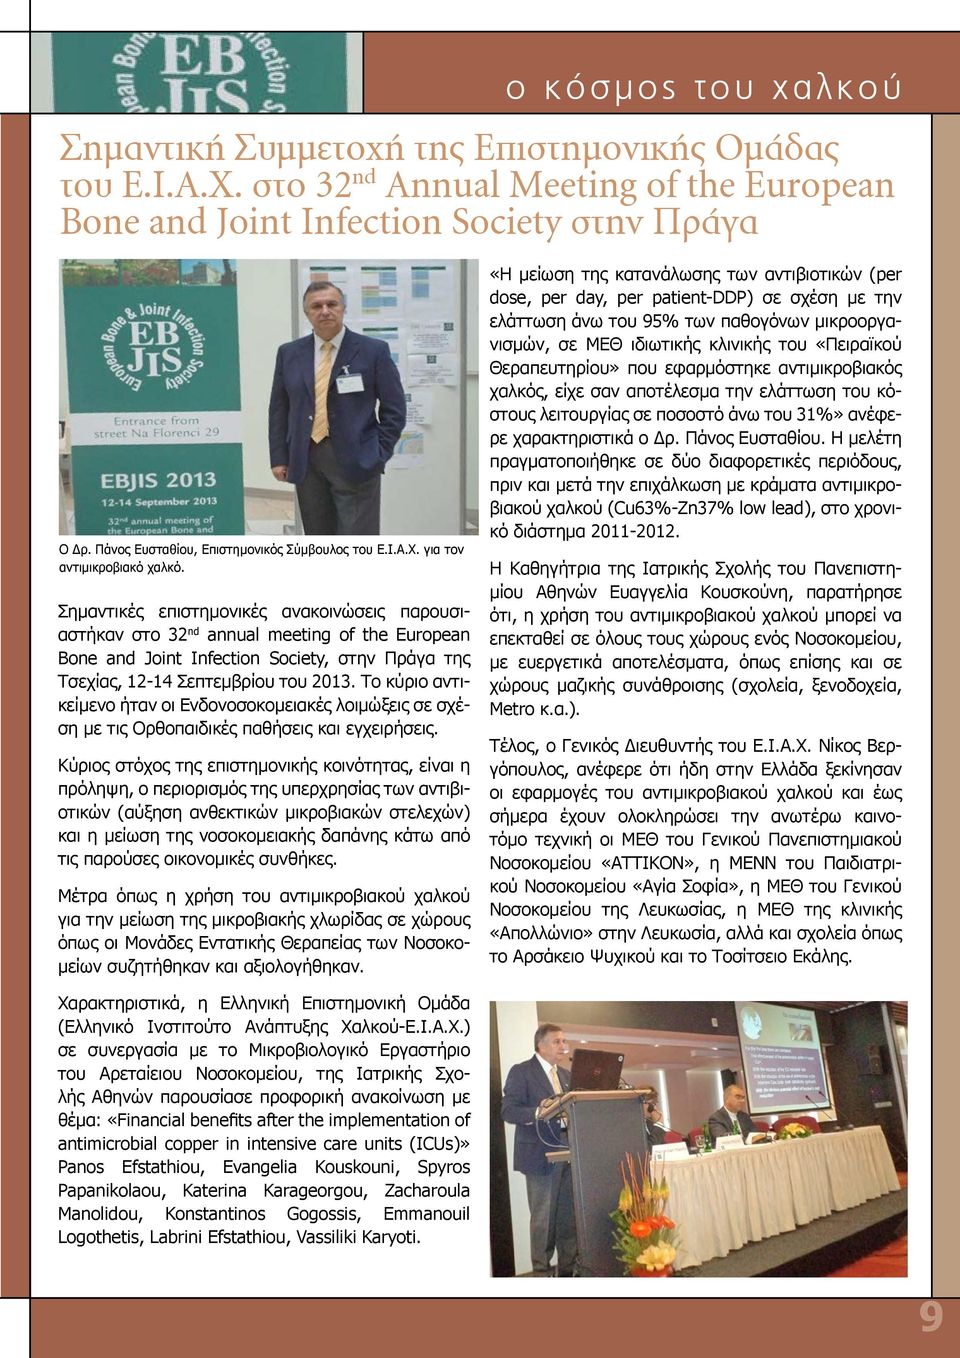 Σημαντικές επιστημονικές ανακοινώσεις παρουσιαστήκαν στο 32 nd annual meeting of the European Bone and Joint Infection Society, στην Πράγα της Τσεχίας, 12-14 Σεπτεμβρίου του 2013.